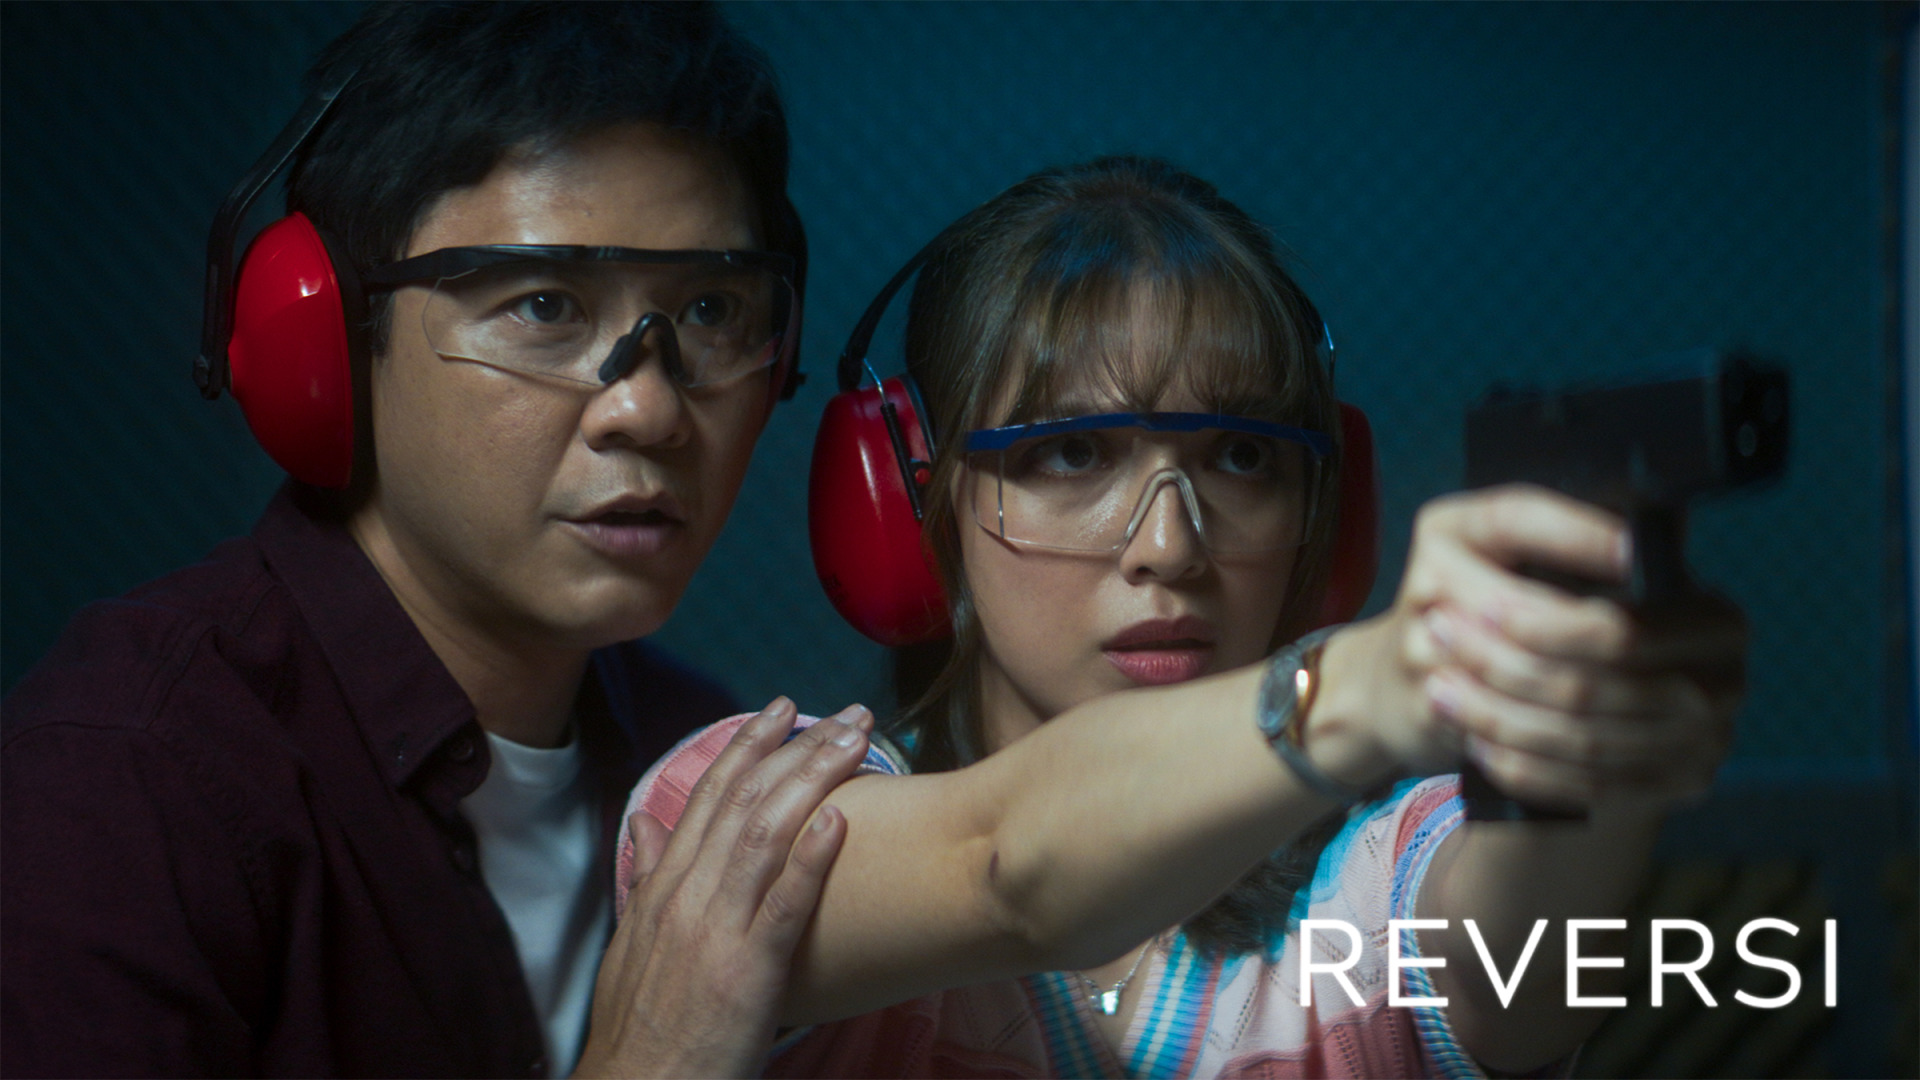 郑建国最新力作《REVERSI》入围第26届乌迪内远东电影节。